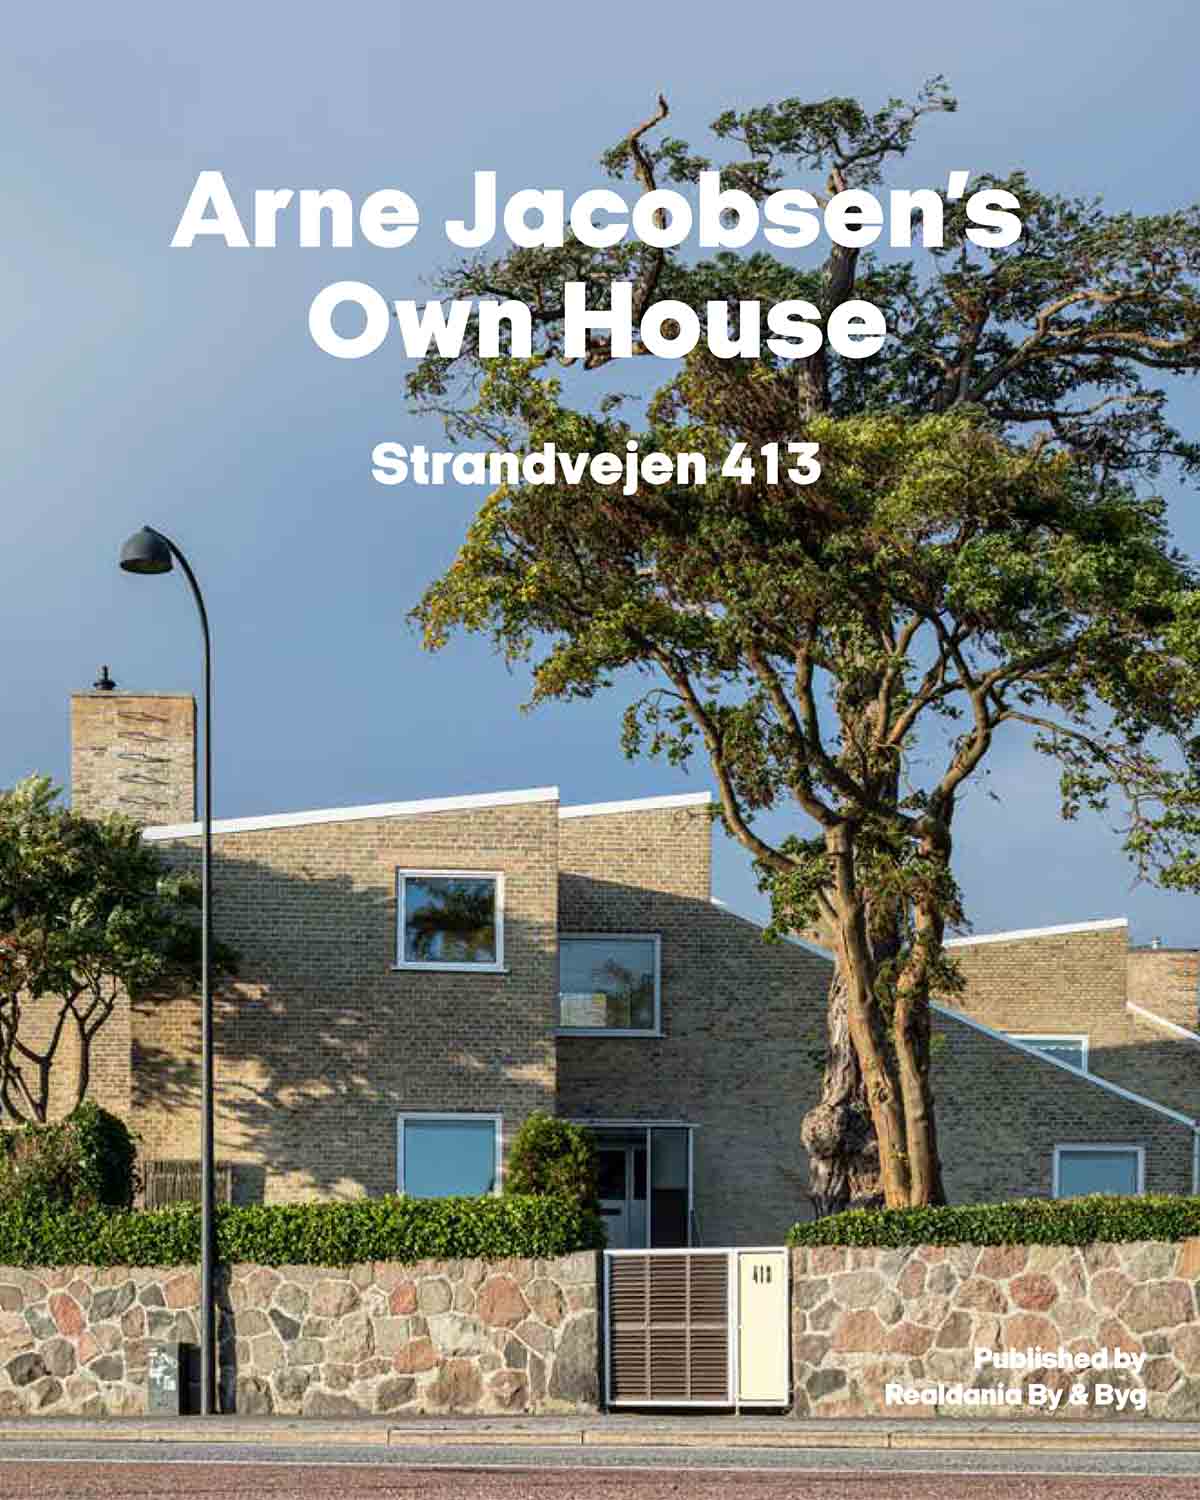 Arne Jacobsens own house - Strandvejen 413